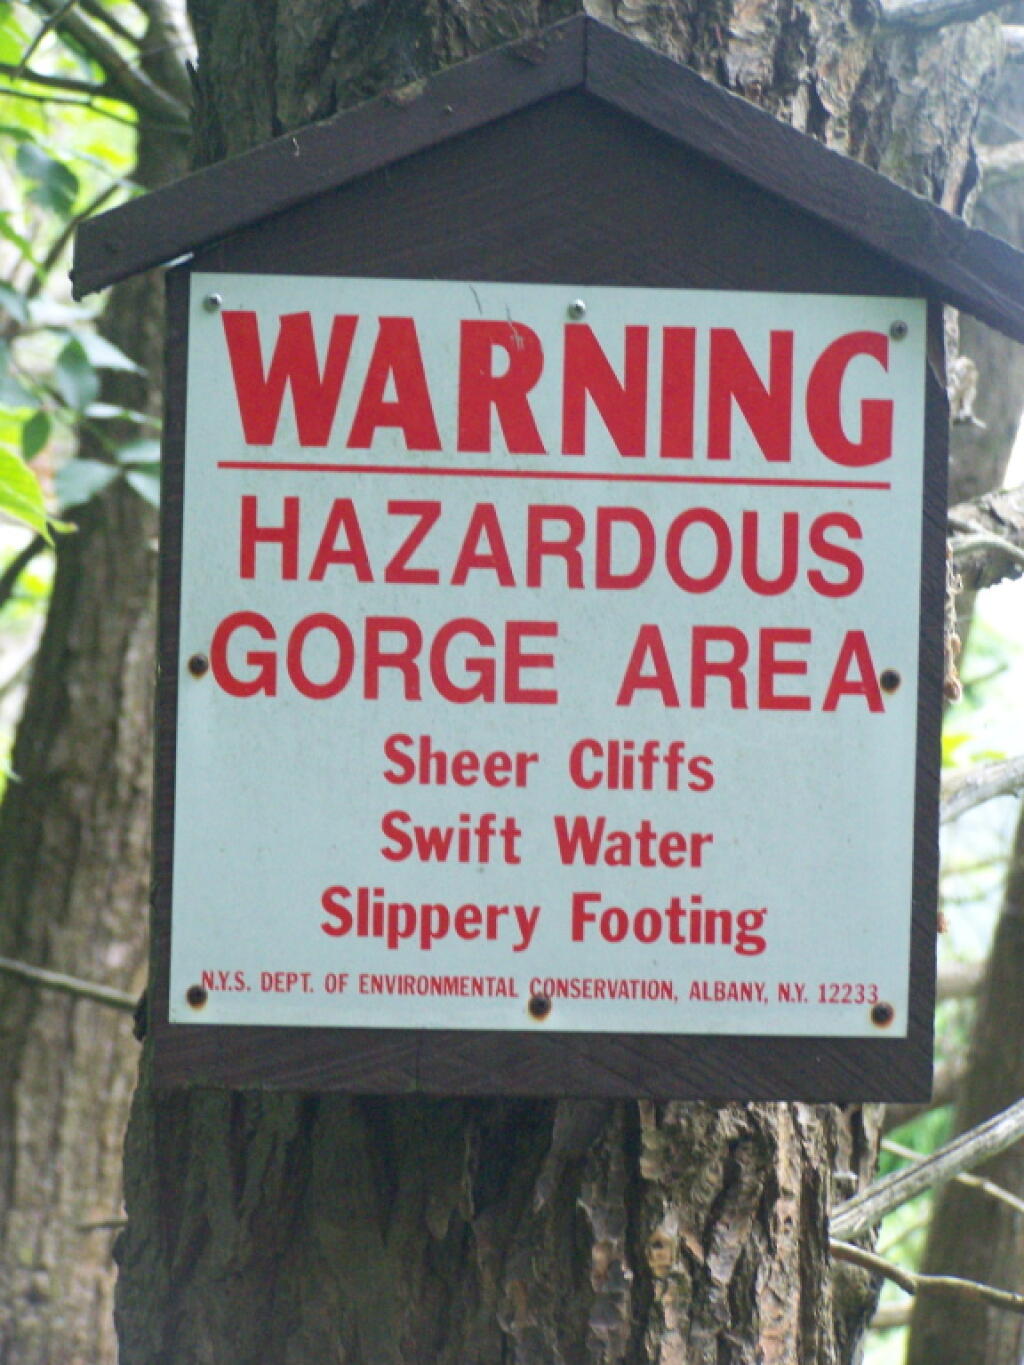 Hazardous Gorge Area